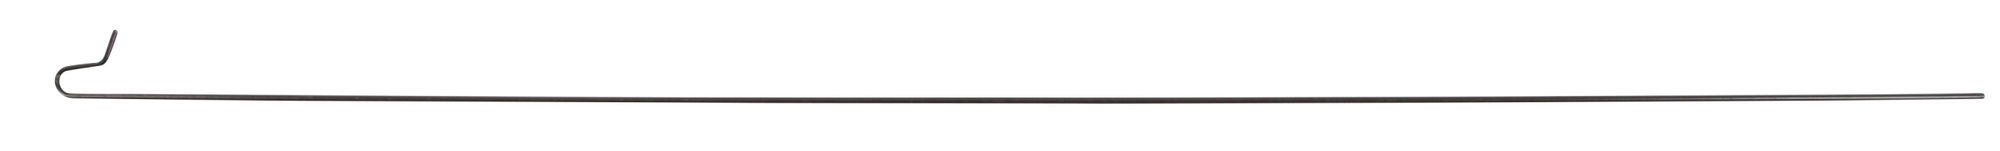 Welpen- und Kleintiergehege 78*57cm, 8 Gitter,mit Türe